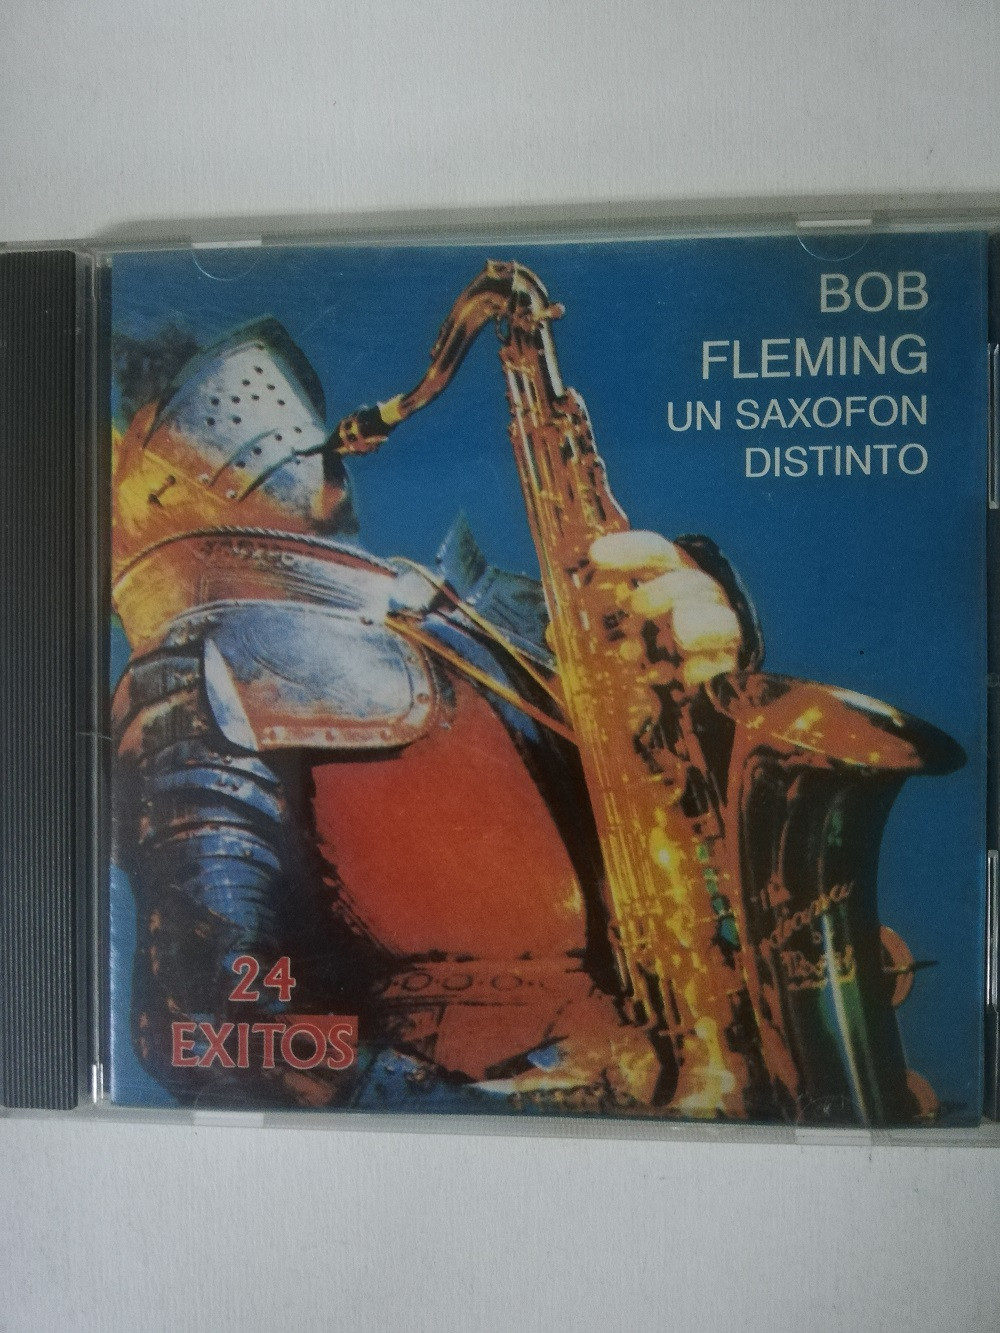 Imagen CD BOB FLEMING - UN SAXOFÓN DISTINTO